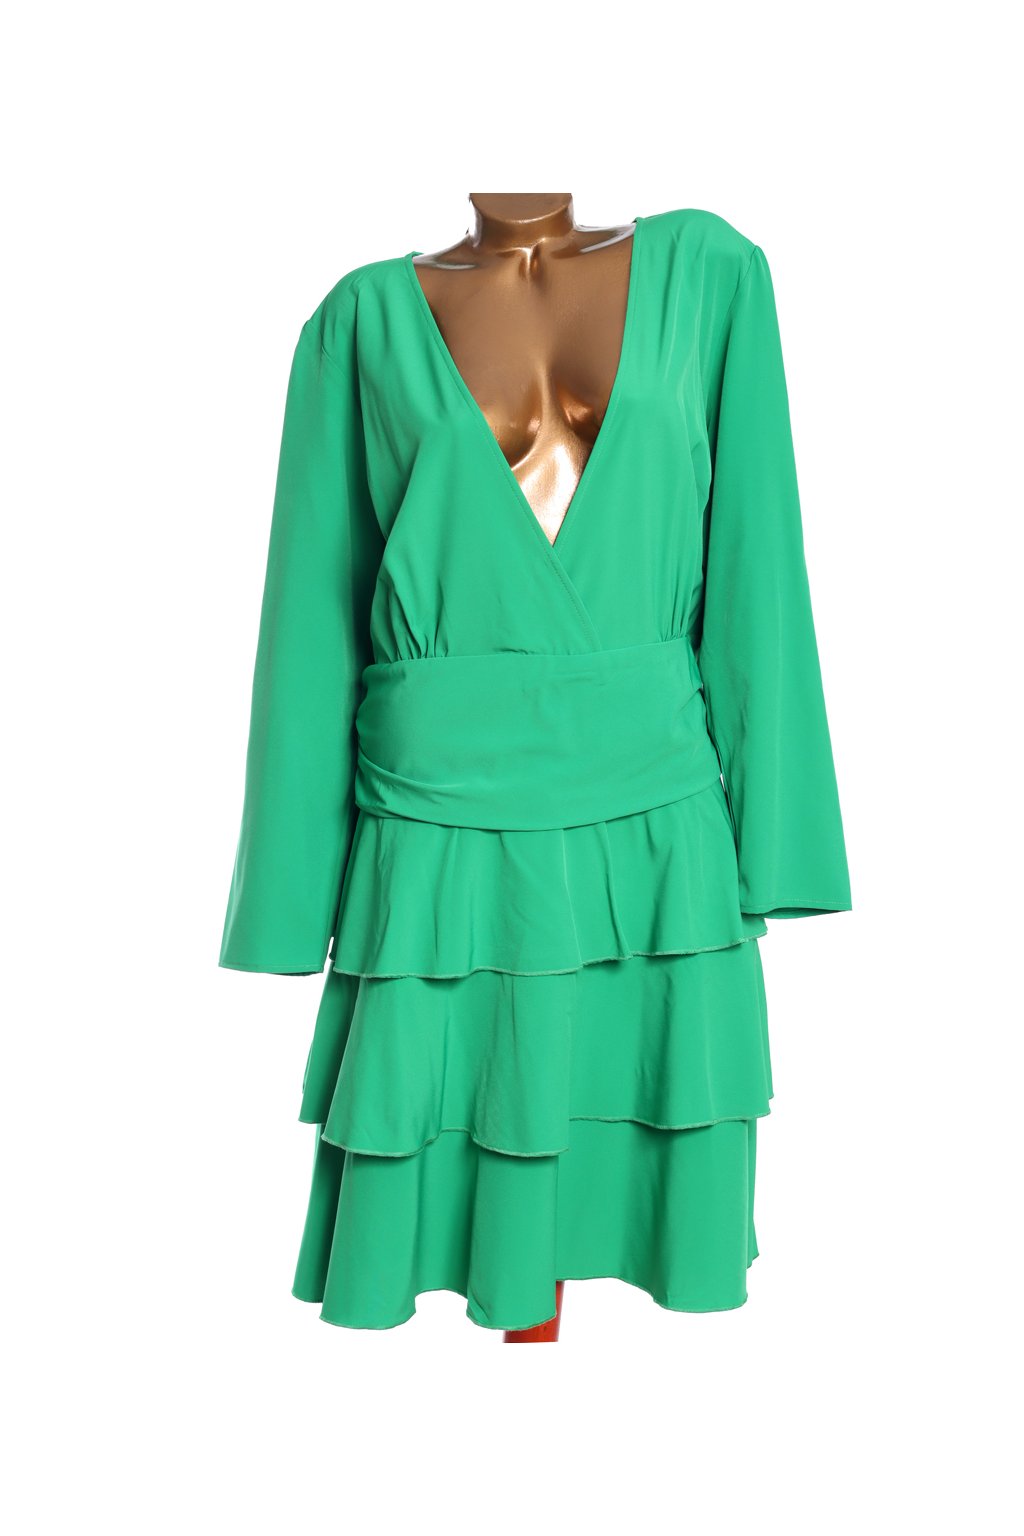 Dámské zelené elegantní šaty / Miss Guided / XXXXL (54) / ANGLIE